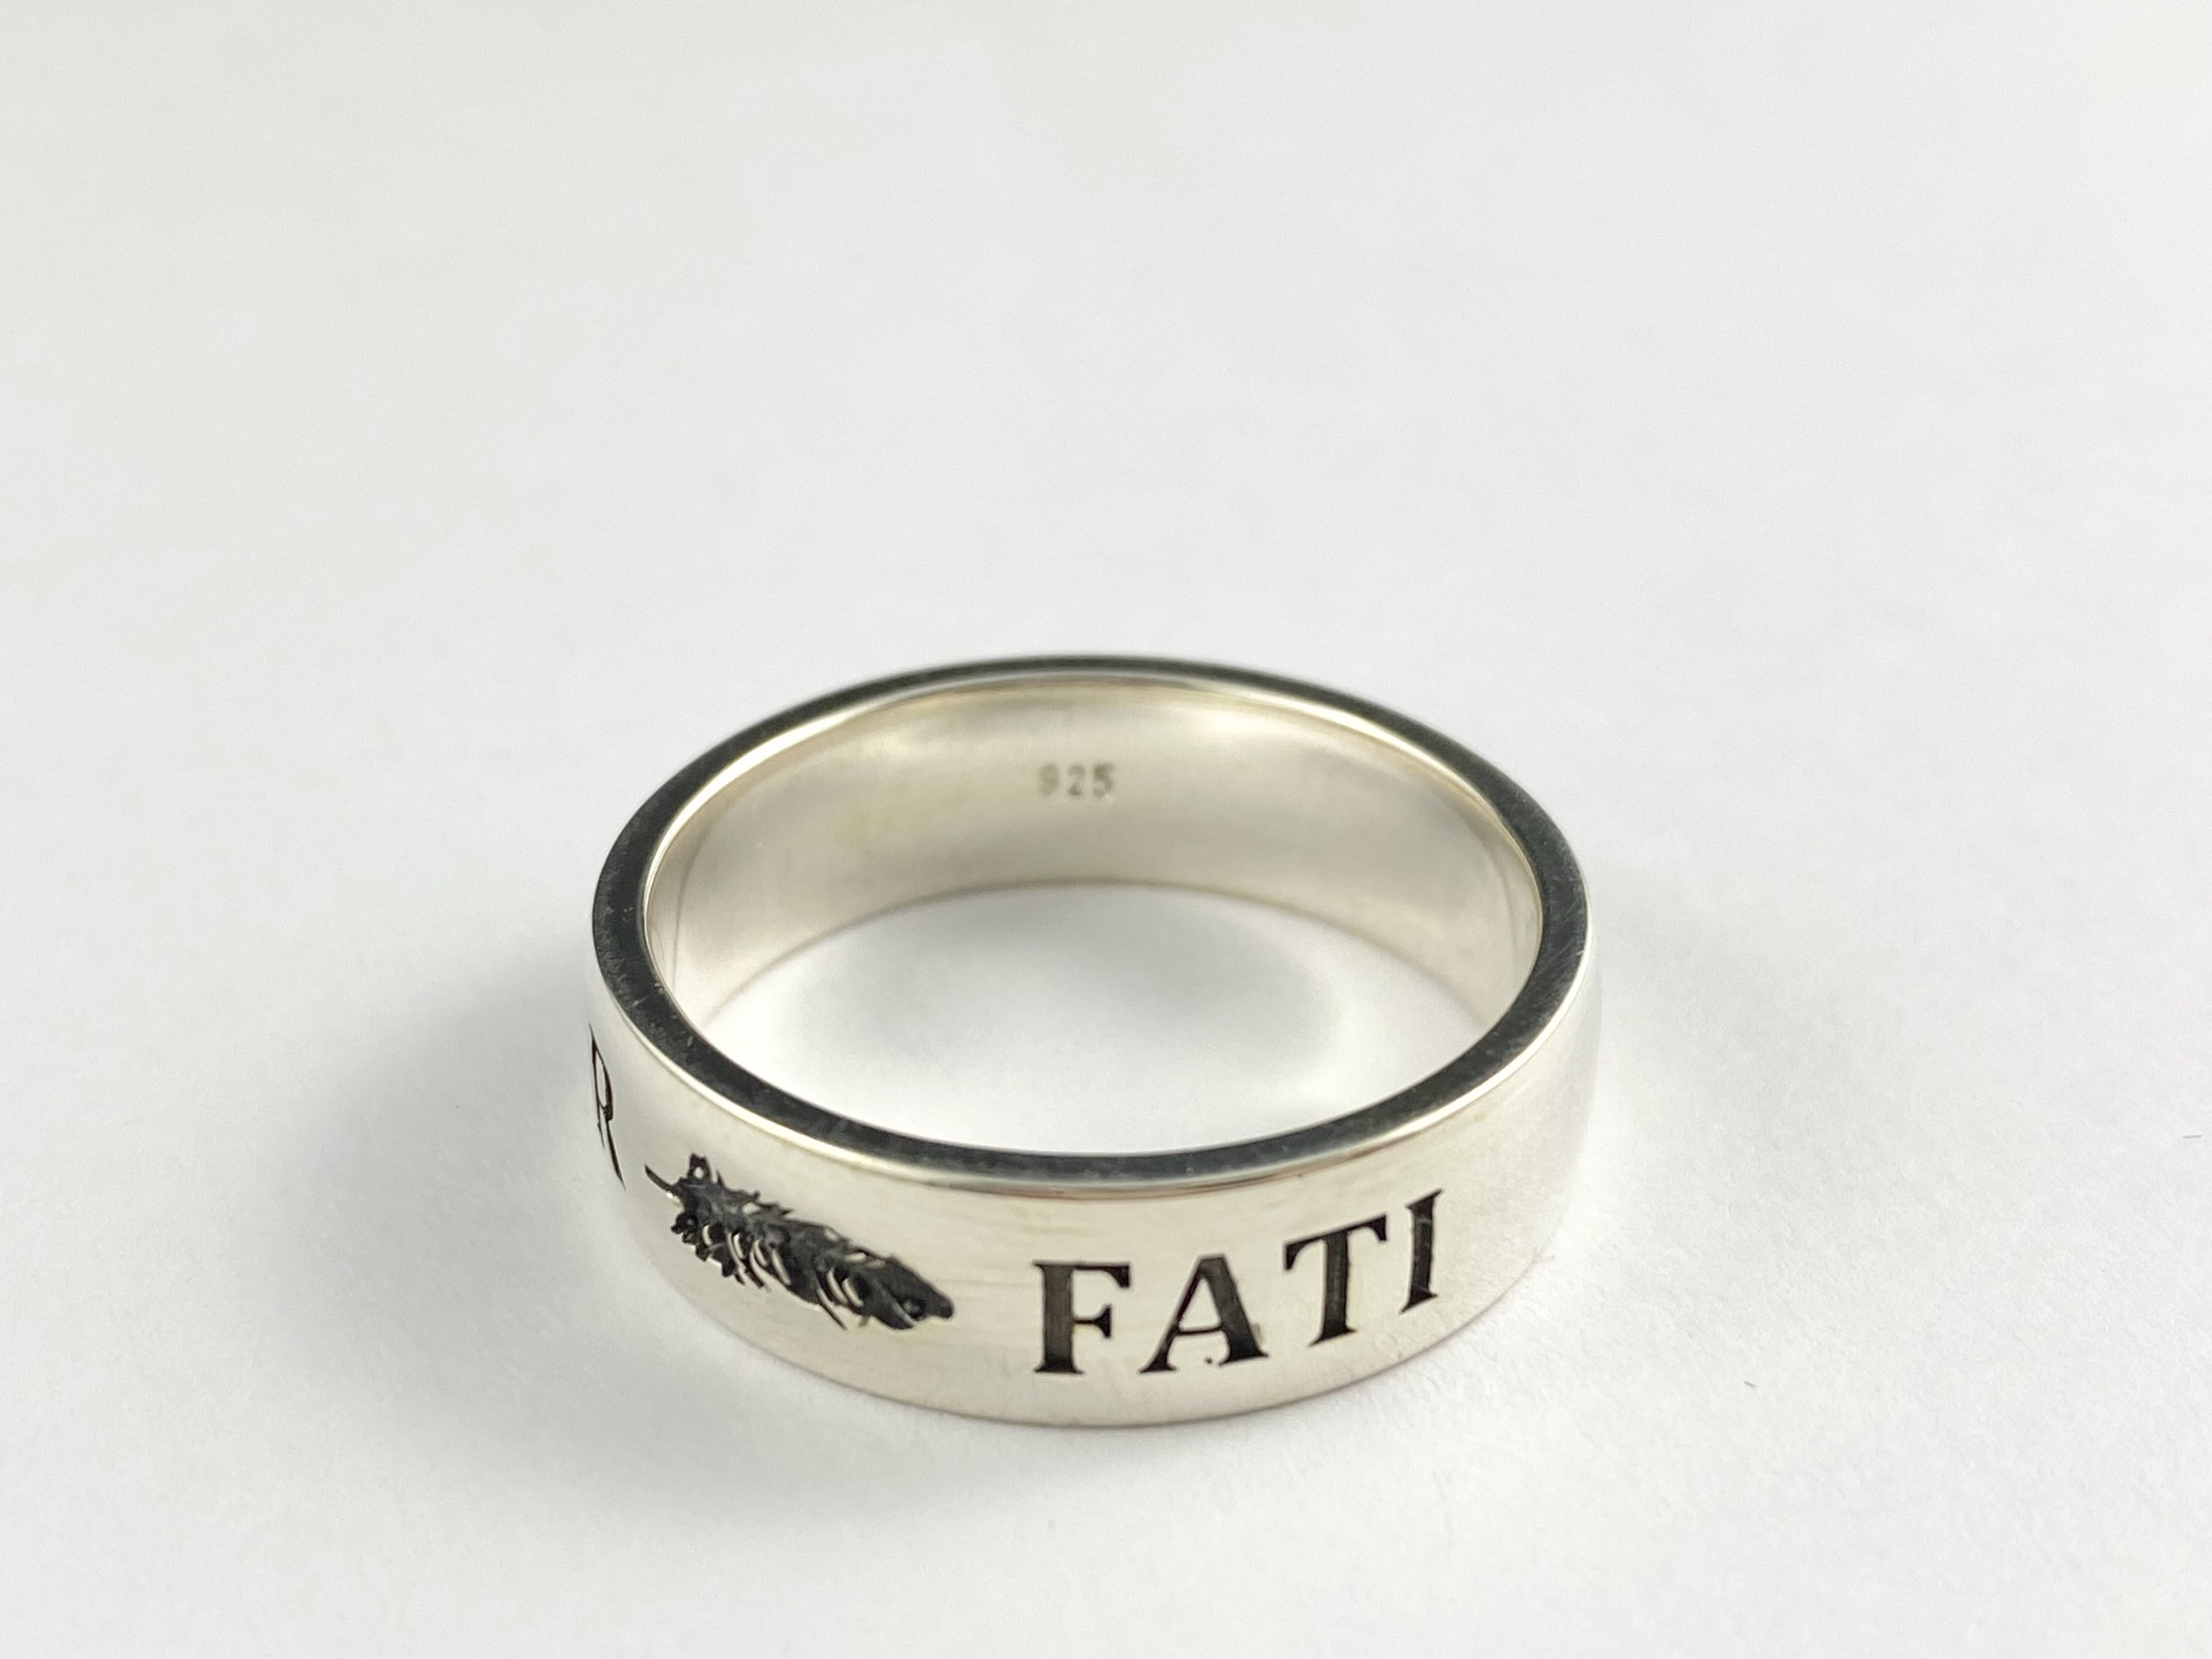 Love of Fate Fati